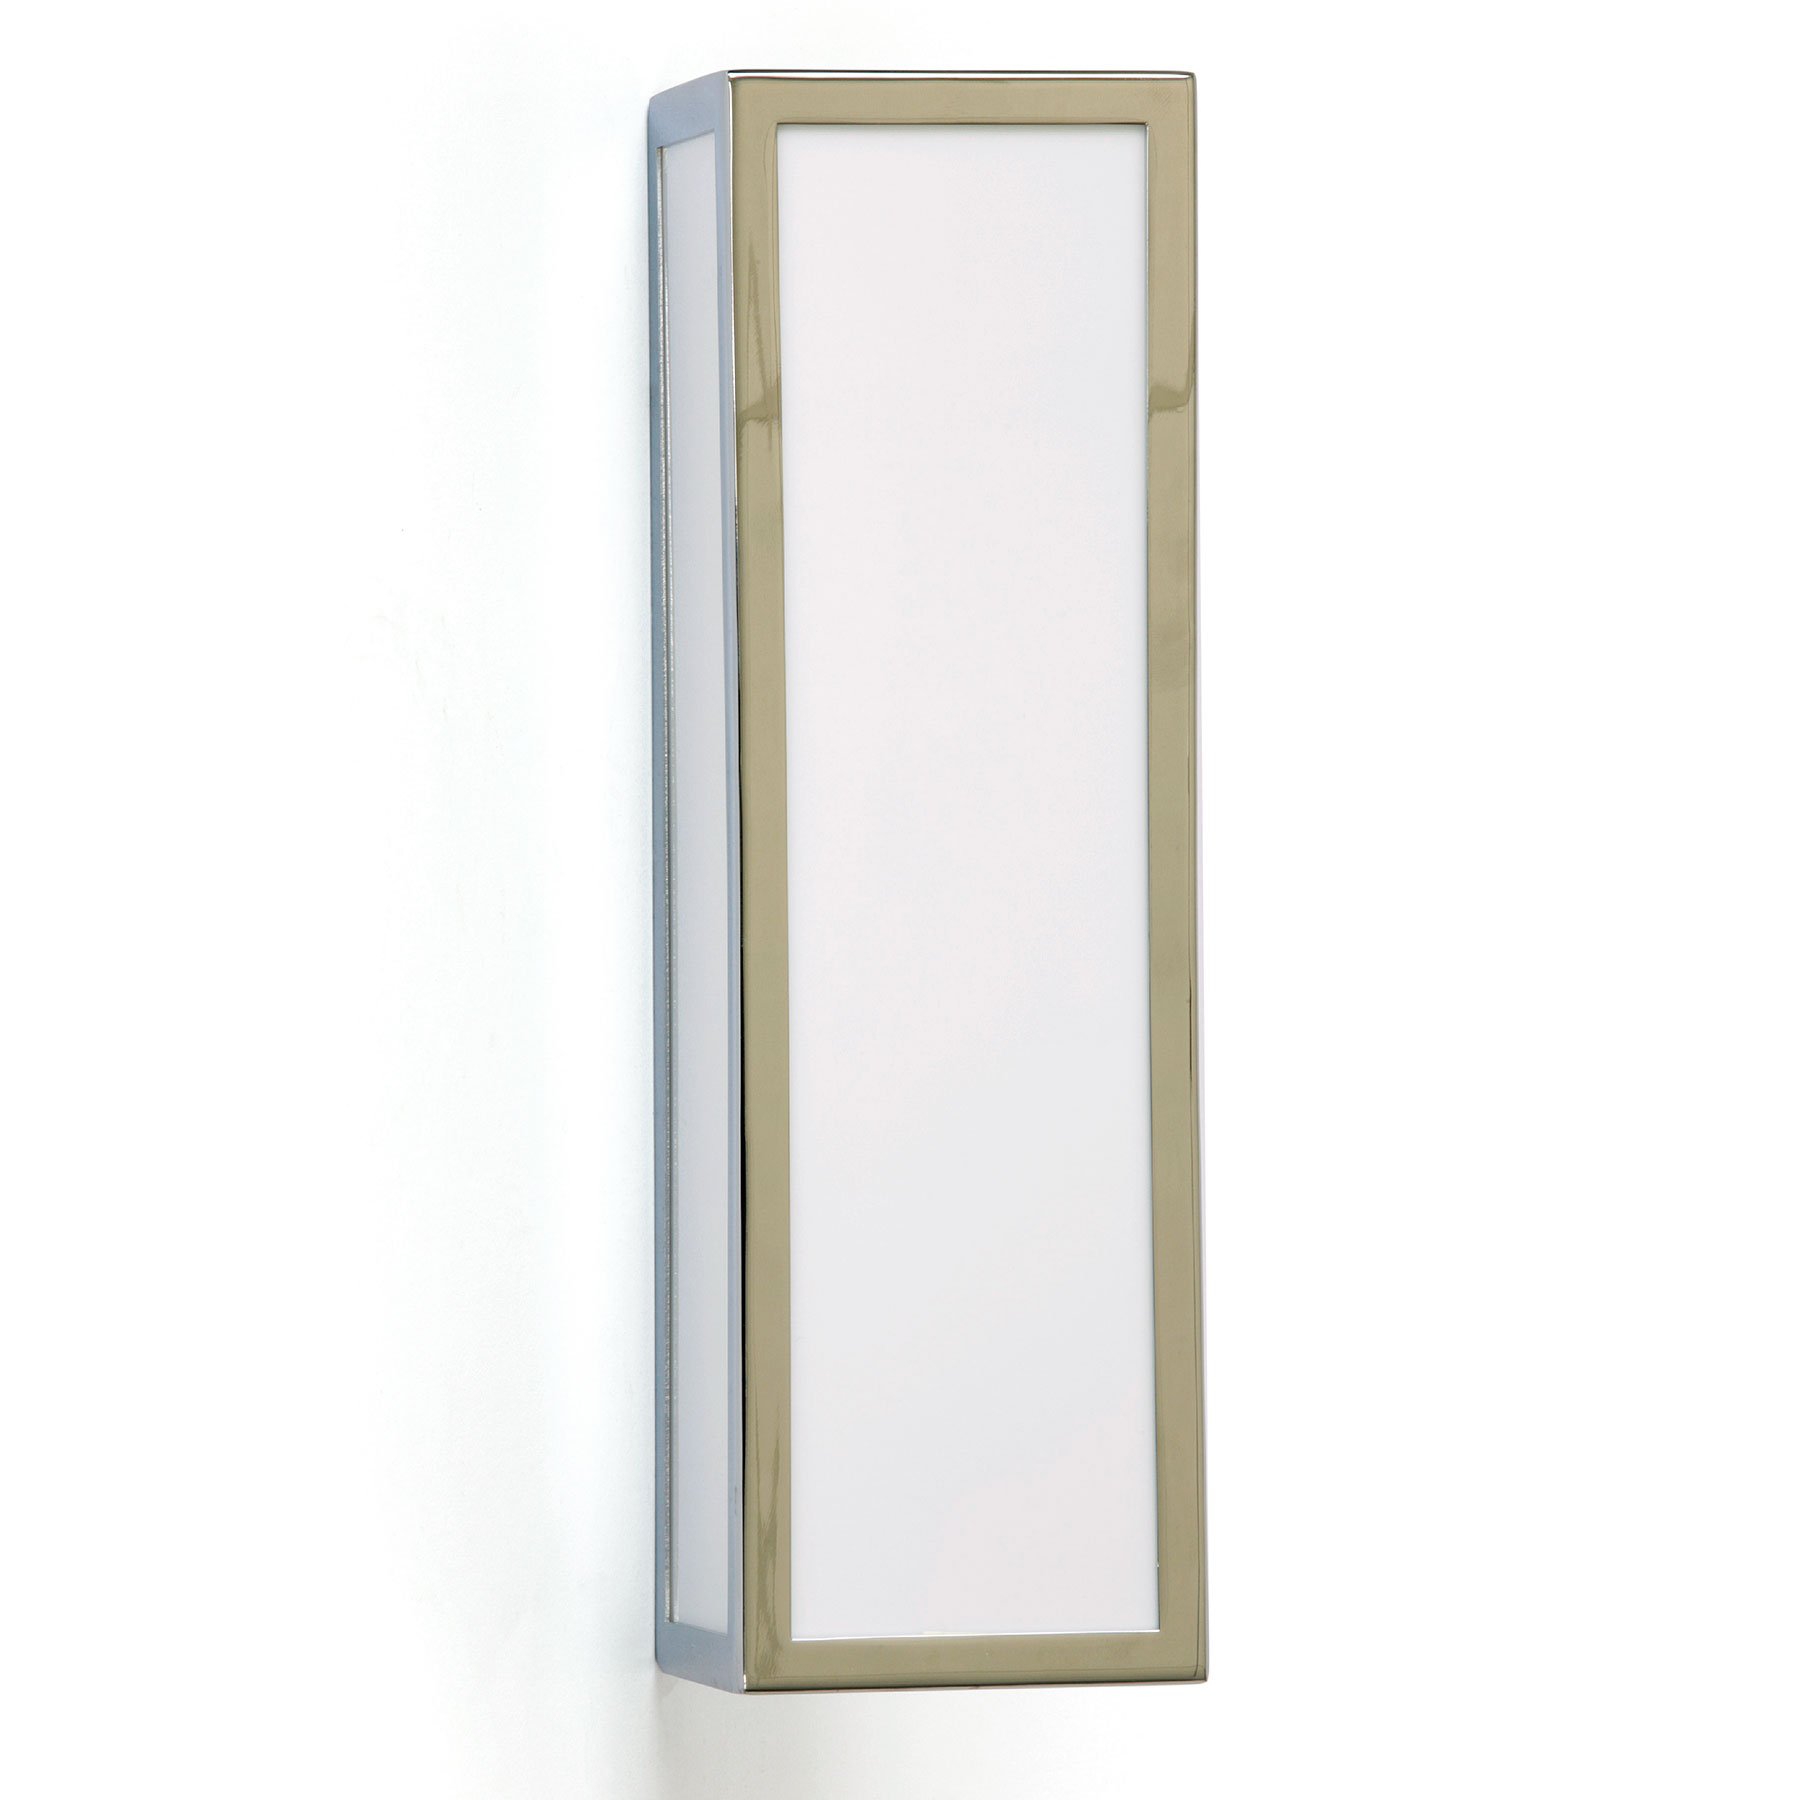 IP44 LED Kasten-Wandleuchte für das Bad im Bauhaus-Stil: Klare Formen: Kasten-Wandleuchte für Bad und Sauna, Ausführung in Chrom